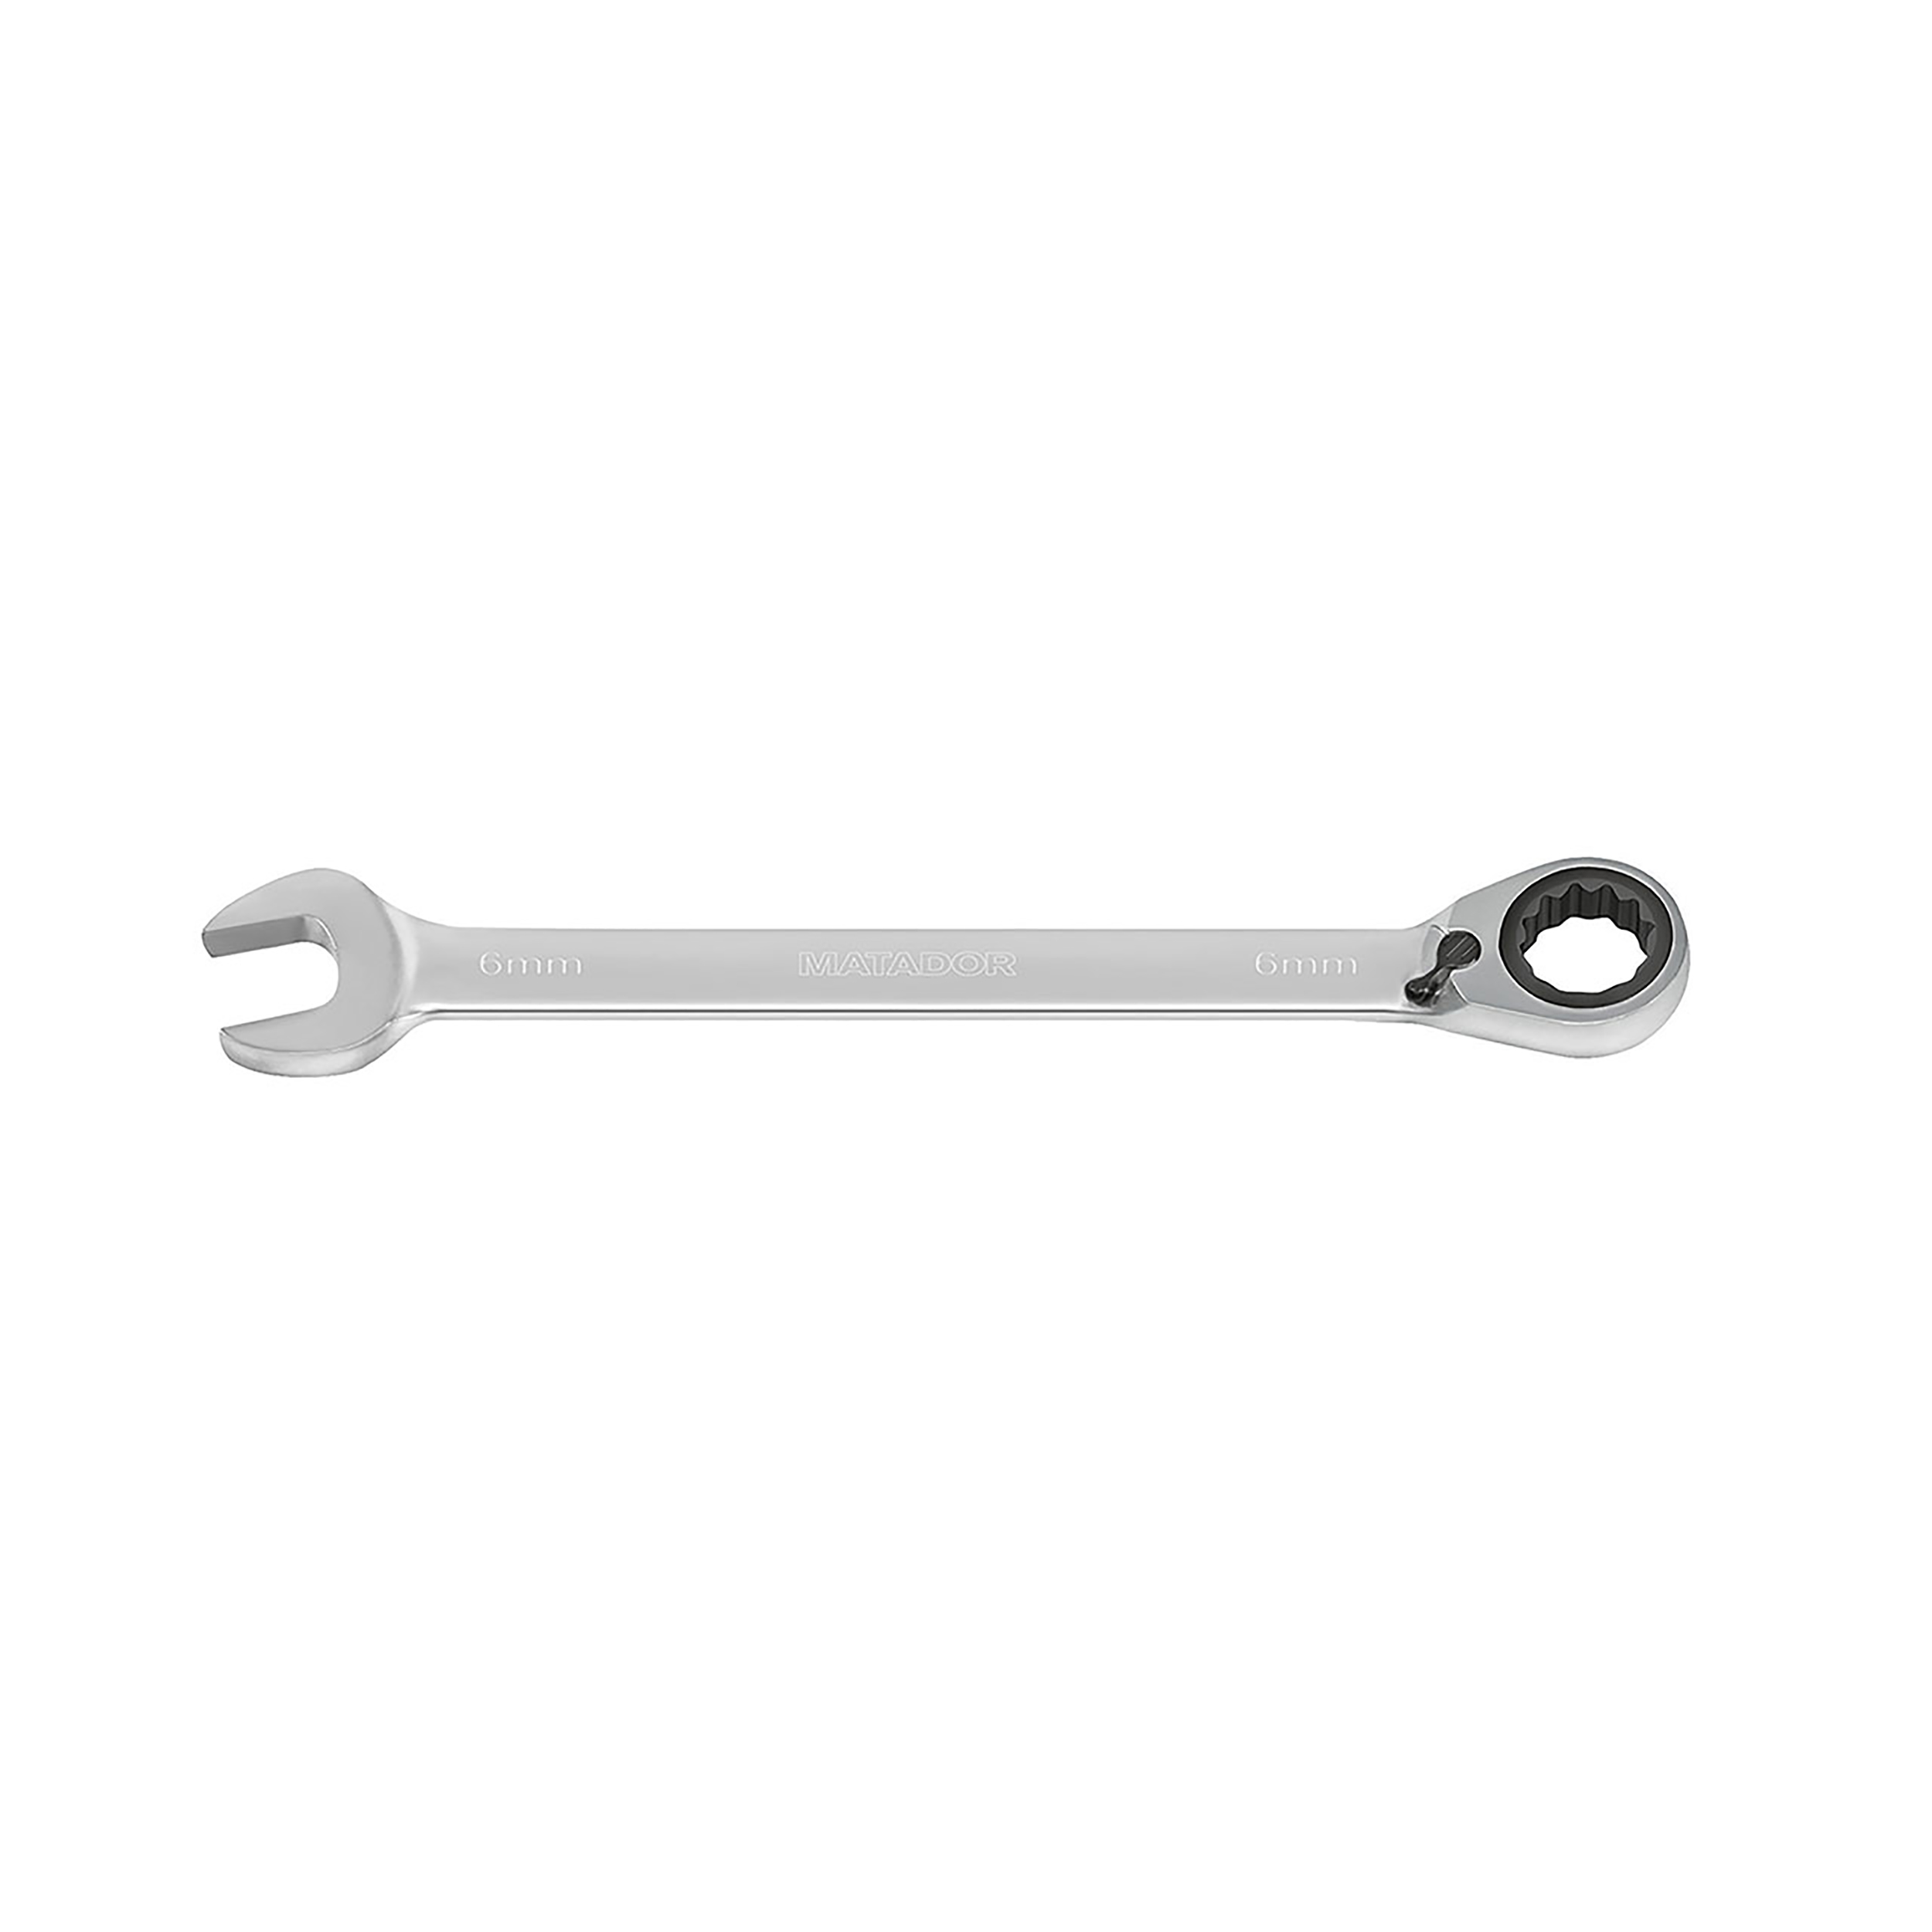 Knarren-Ringmaulschlüssel, m. Hebel, 9 mm, 48 Nm, MATADOR Art.-Code: 01890090